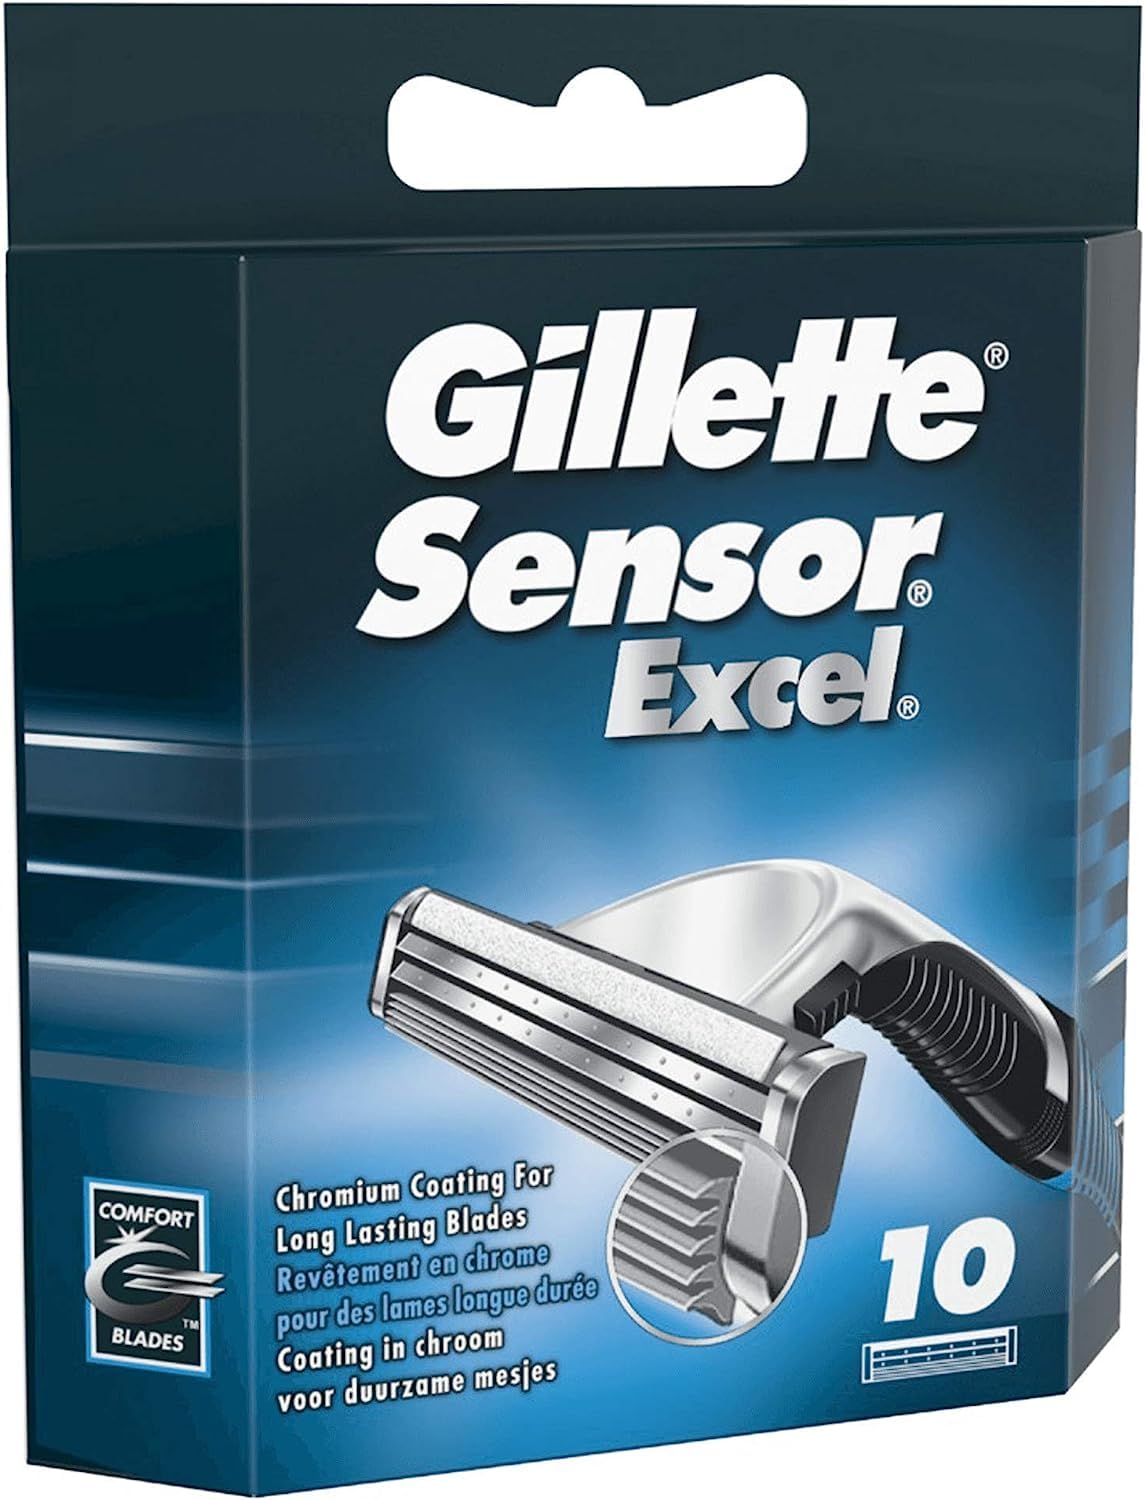 Gillette Sensor Excel Shaving Cartridges for Men Quantity: 10 (Packaging May Vary)